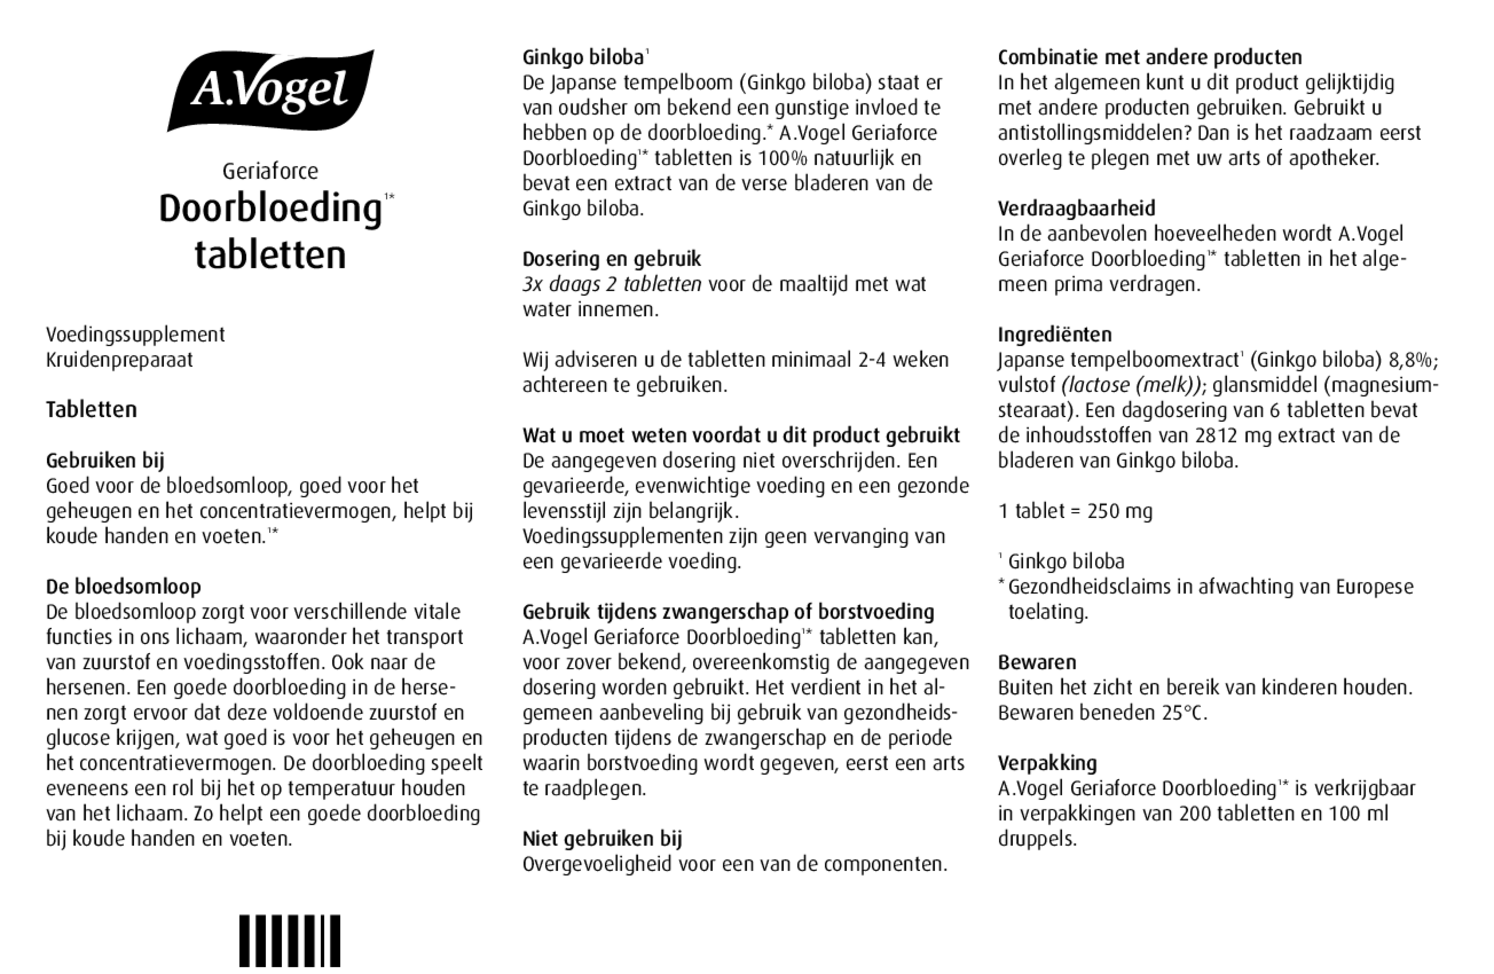 Geriaforce Doorbloeding* Tabletten afbeelding van document #1, gebruiksaanwijzing